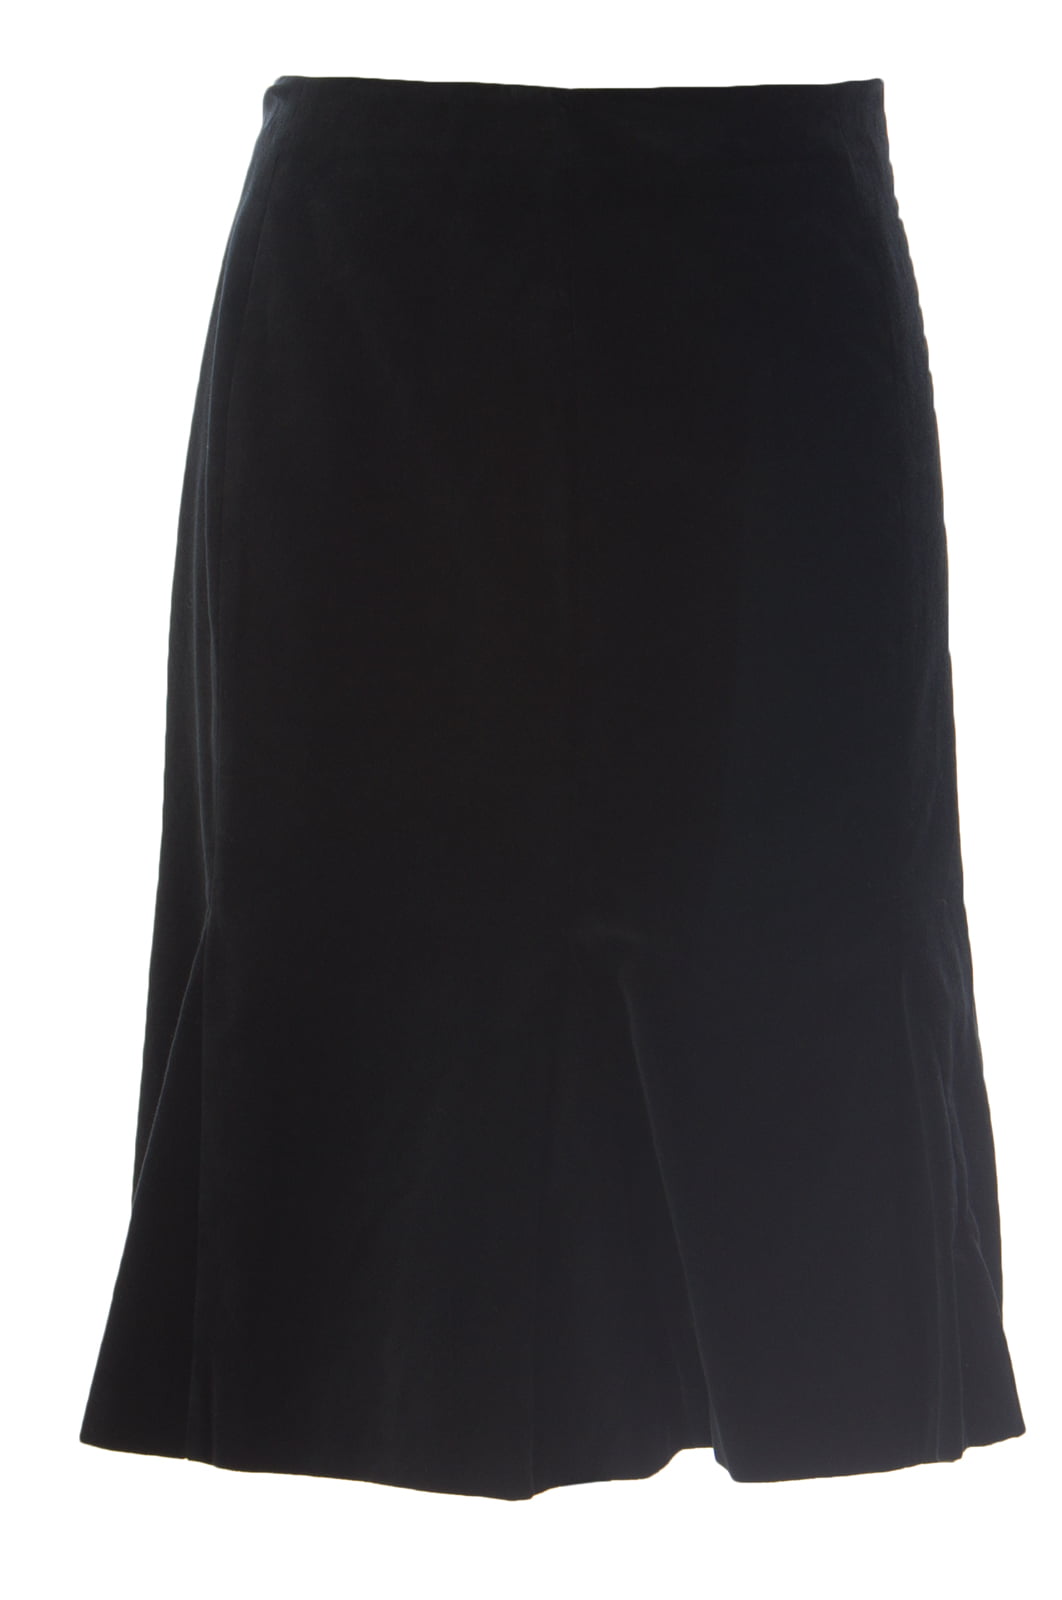 BODEN Women's Velvet Flirty Pencil Skirt US Sz 4R Black - Walmart.com